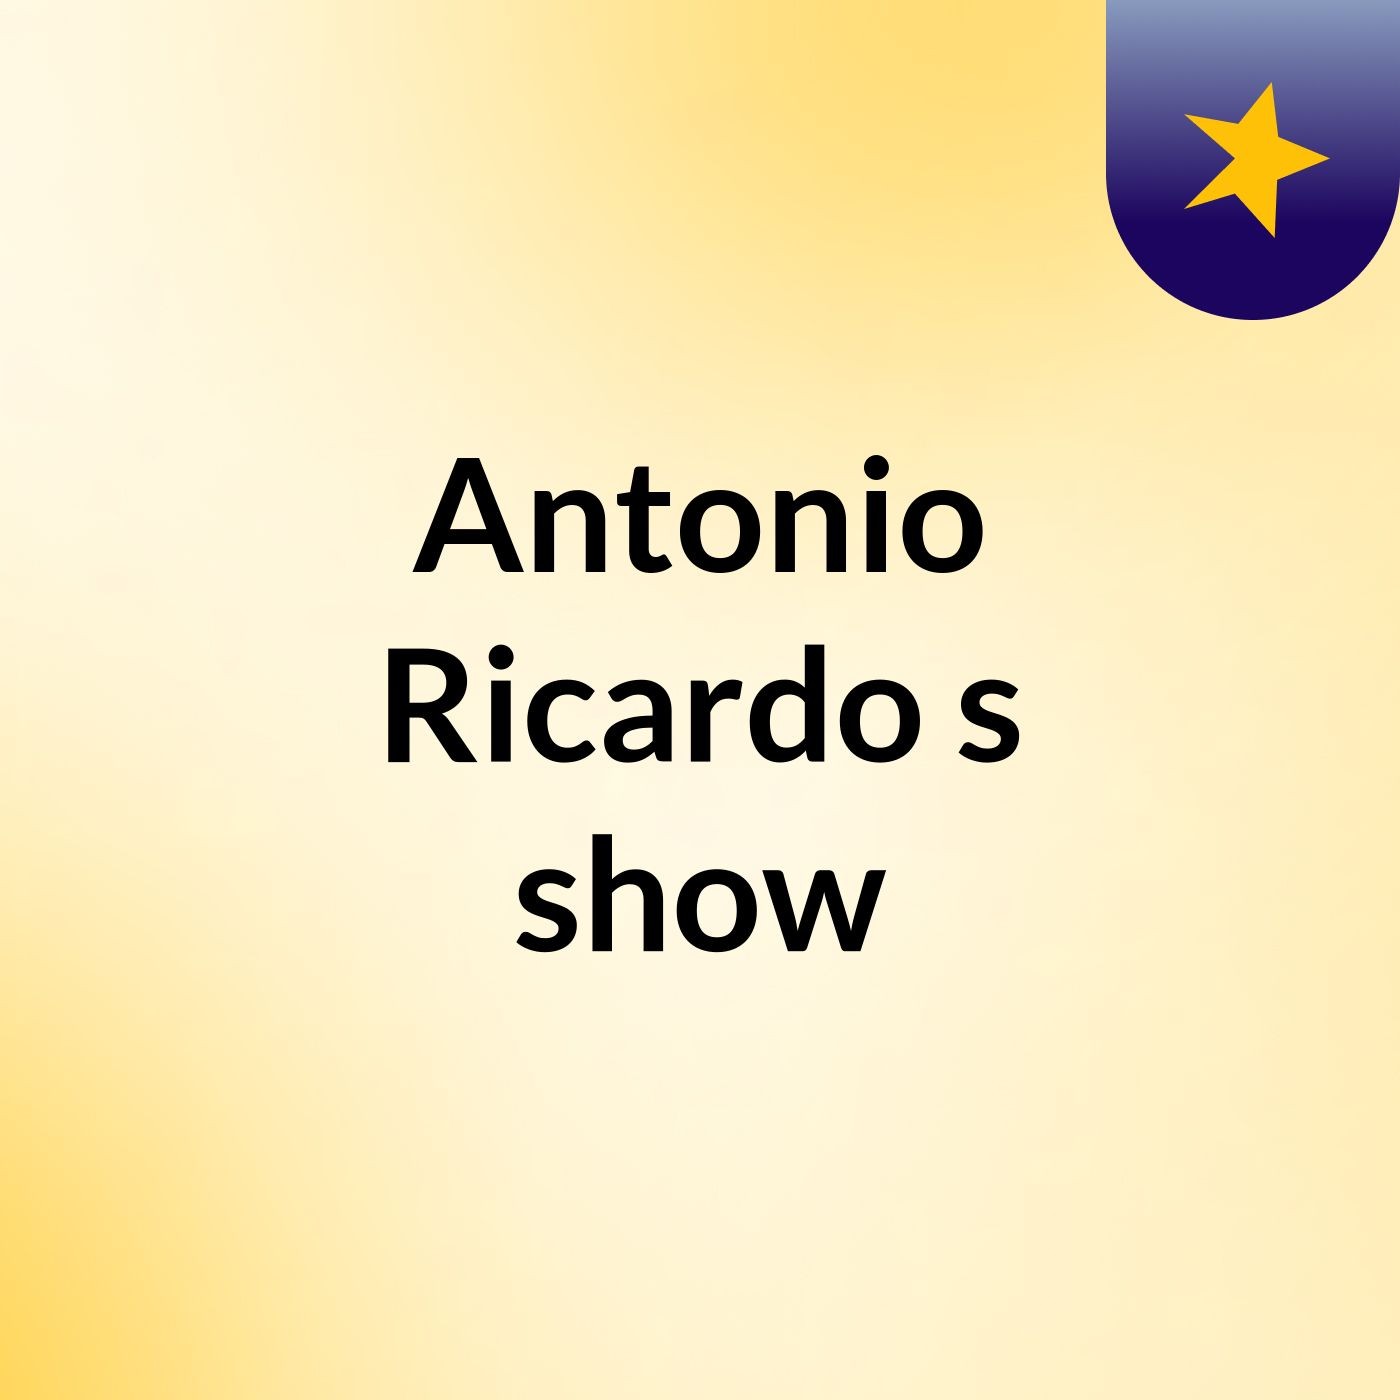 Antonio Ricardo's show